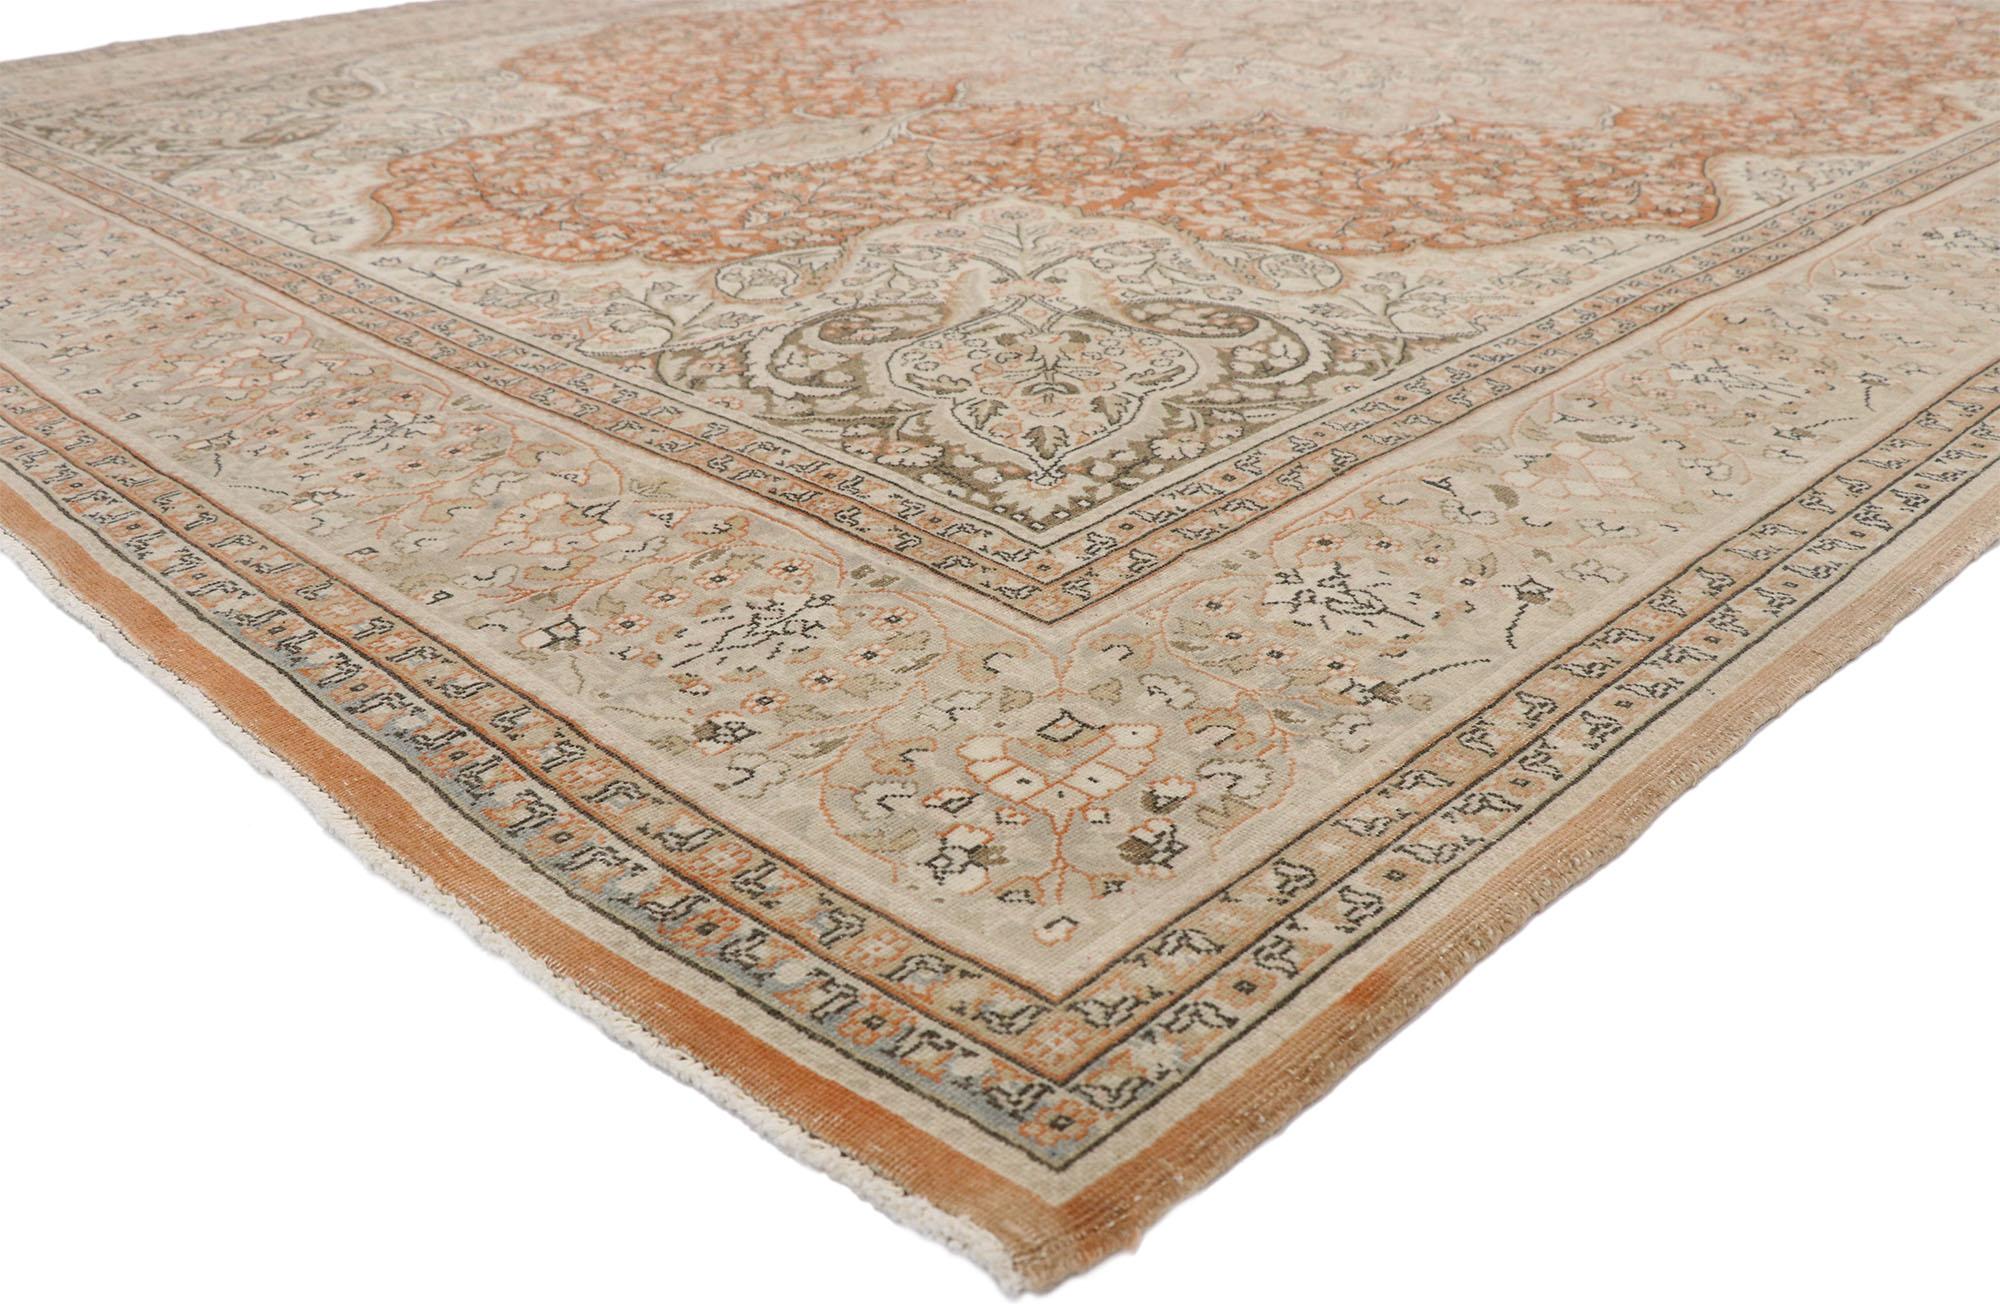 52651, strapazierter türkischer Sivas-Teppich im romantisch-rustikalen Art-Nouveau-Stil. Dieser handgeknüpfte türkische Sivas-Teppich aus Wolle, der ein zeitloses Design mit einer romantisch-rustikalen Sensibilität verbindet, verkörpert auf